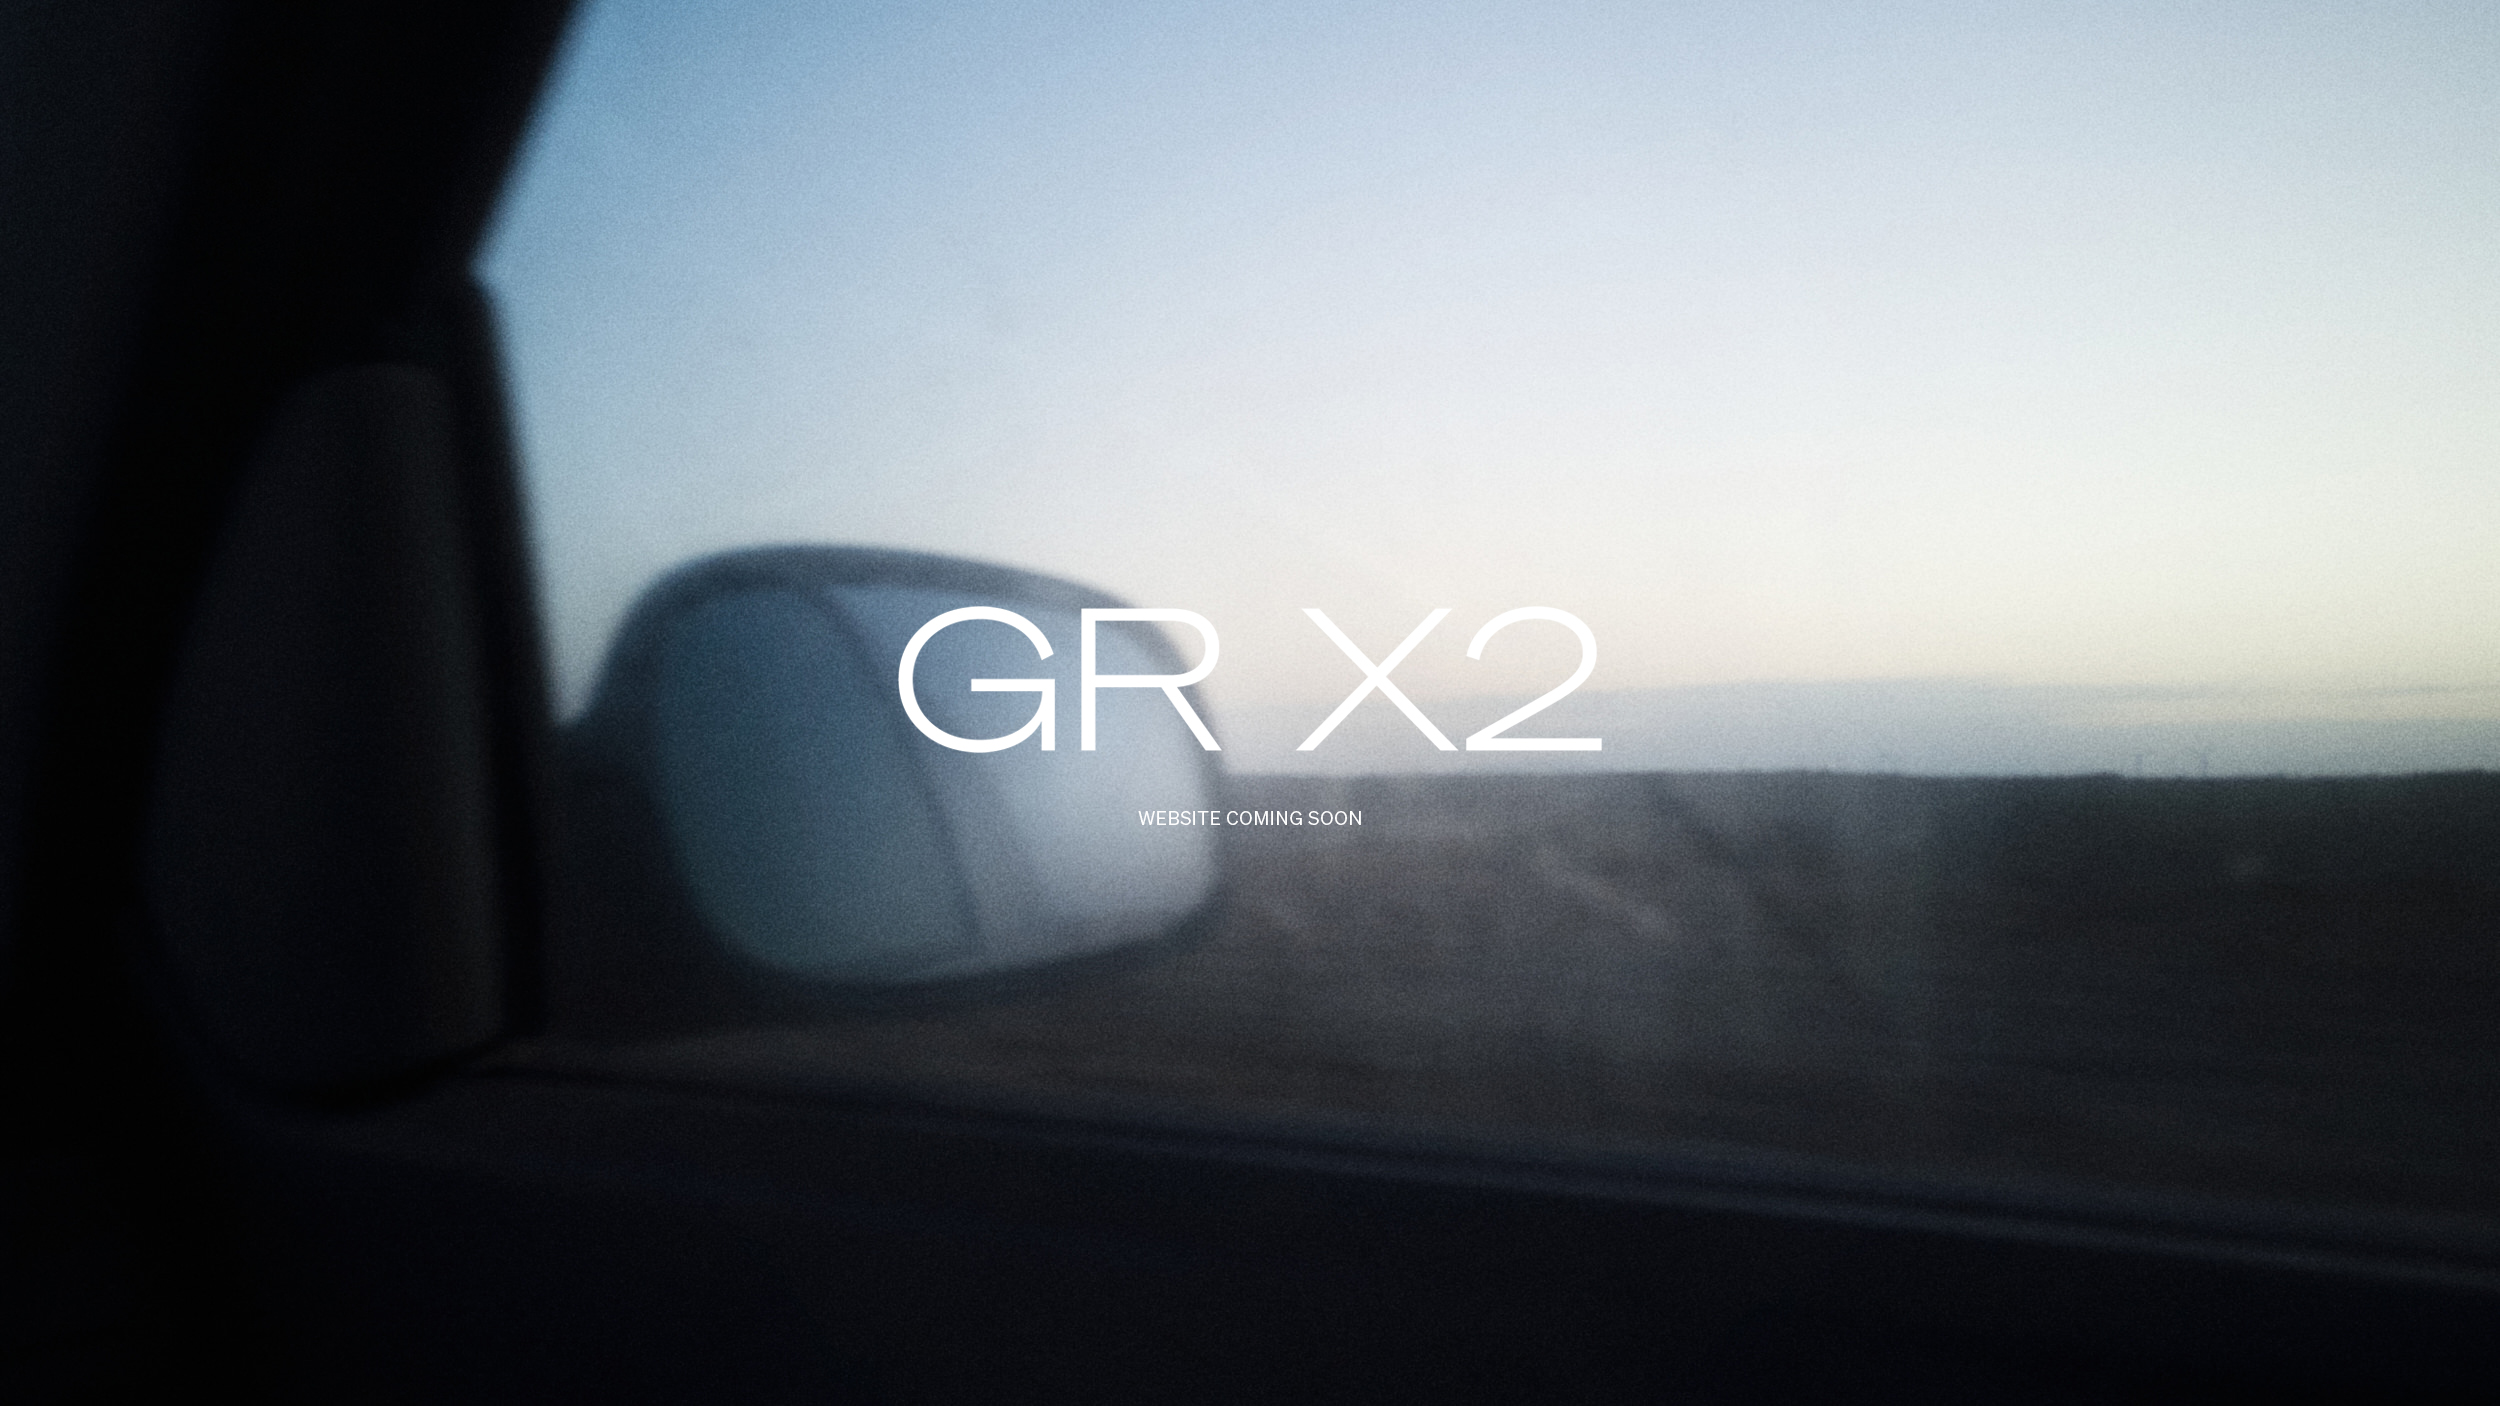 GRX2_Jose_graded_srgbDJI_0541-1_16_9loop-copy